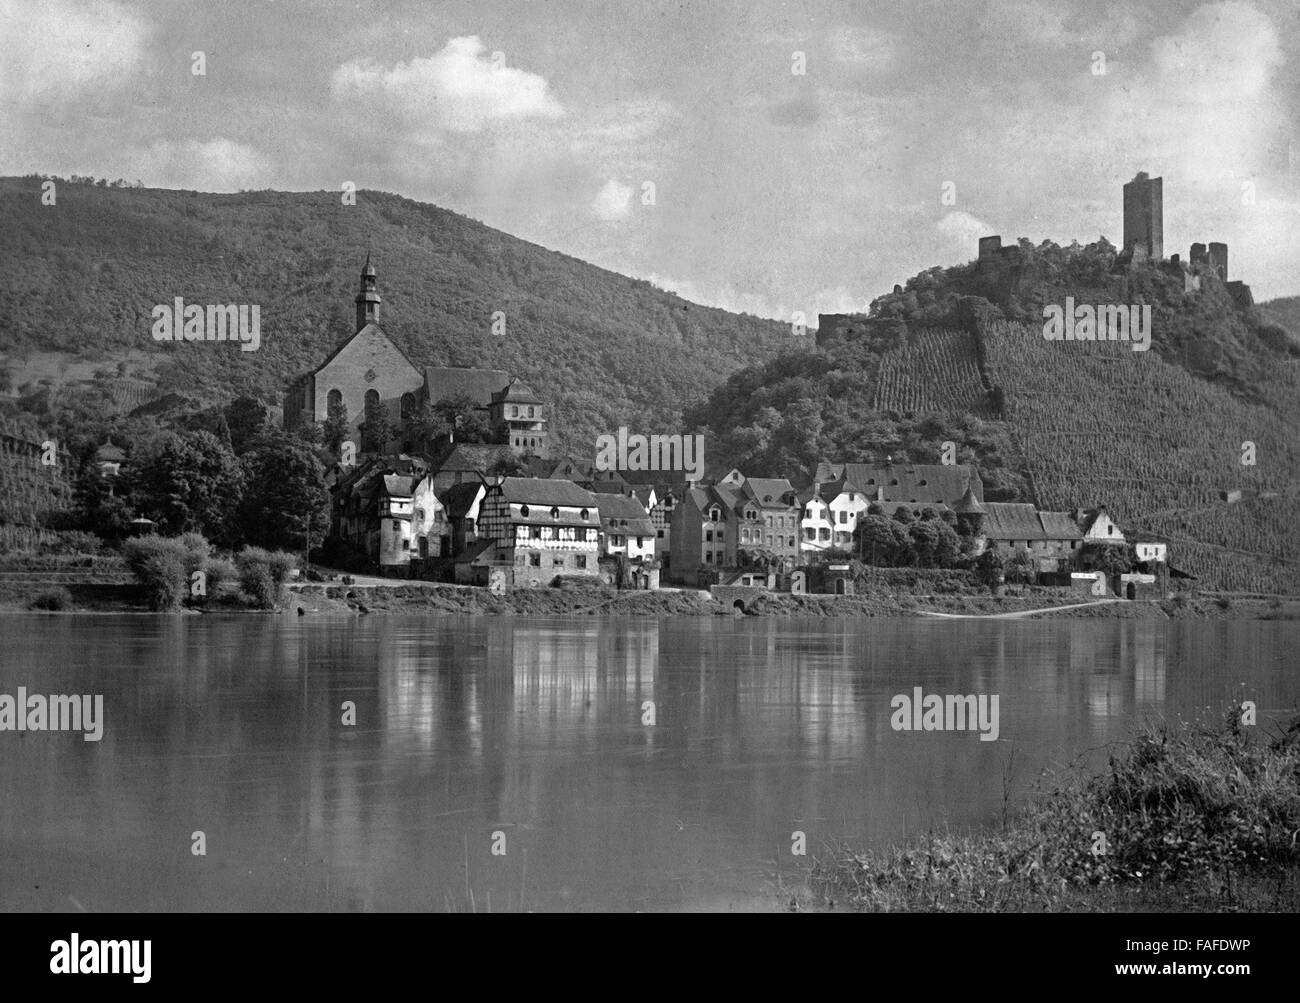 Blick Auf sterben Ortschaft Beilstein an der Mosel, Deutschland, 1930er Jahre. Blick auf das Dorf Beilstein am Fluss Mosel, Deutschland der 1930er Jahre. Stockfoto